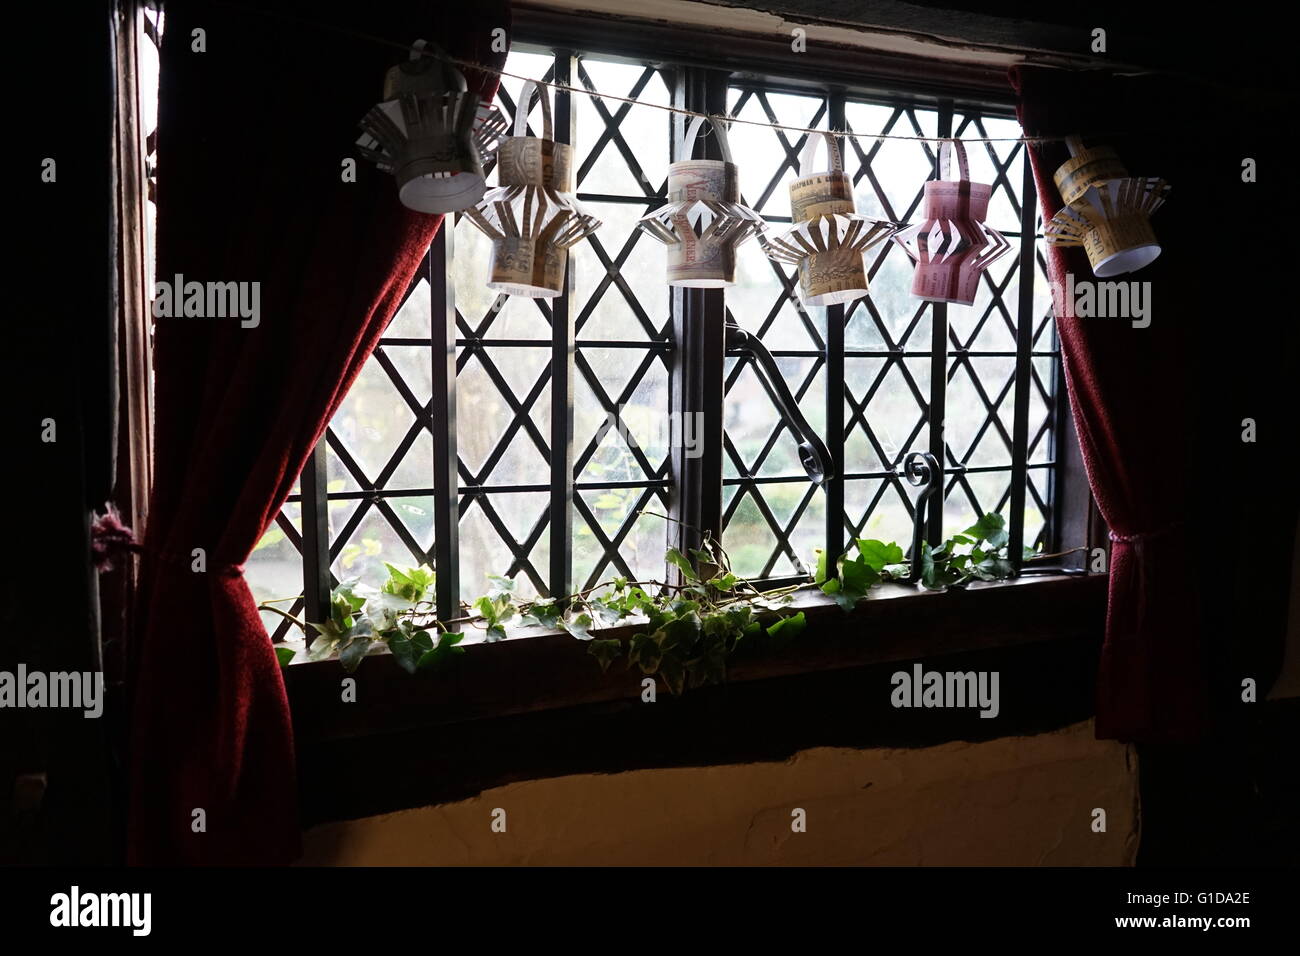 Fenster in Anne Hathaways Hütte, wo Anne Hathaway, die Ehefrau von William Shakespeare, als Kind lebte führte. -Upon-Avon, England. Der älteste Teil des Hauses wurde vor dem 15. Jahrhundert errichtet; das obere Teil ist 17. Jahrhundert Stockfoto